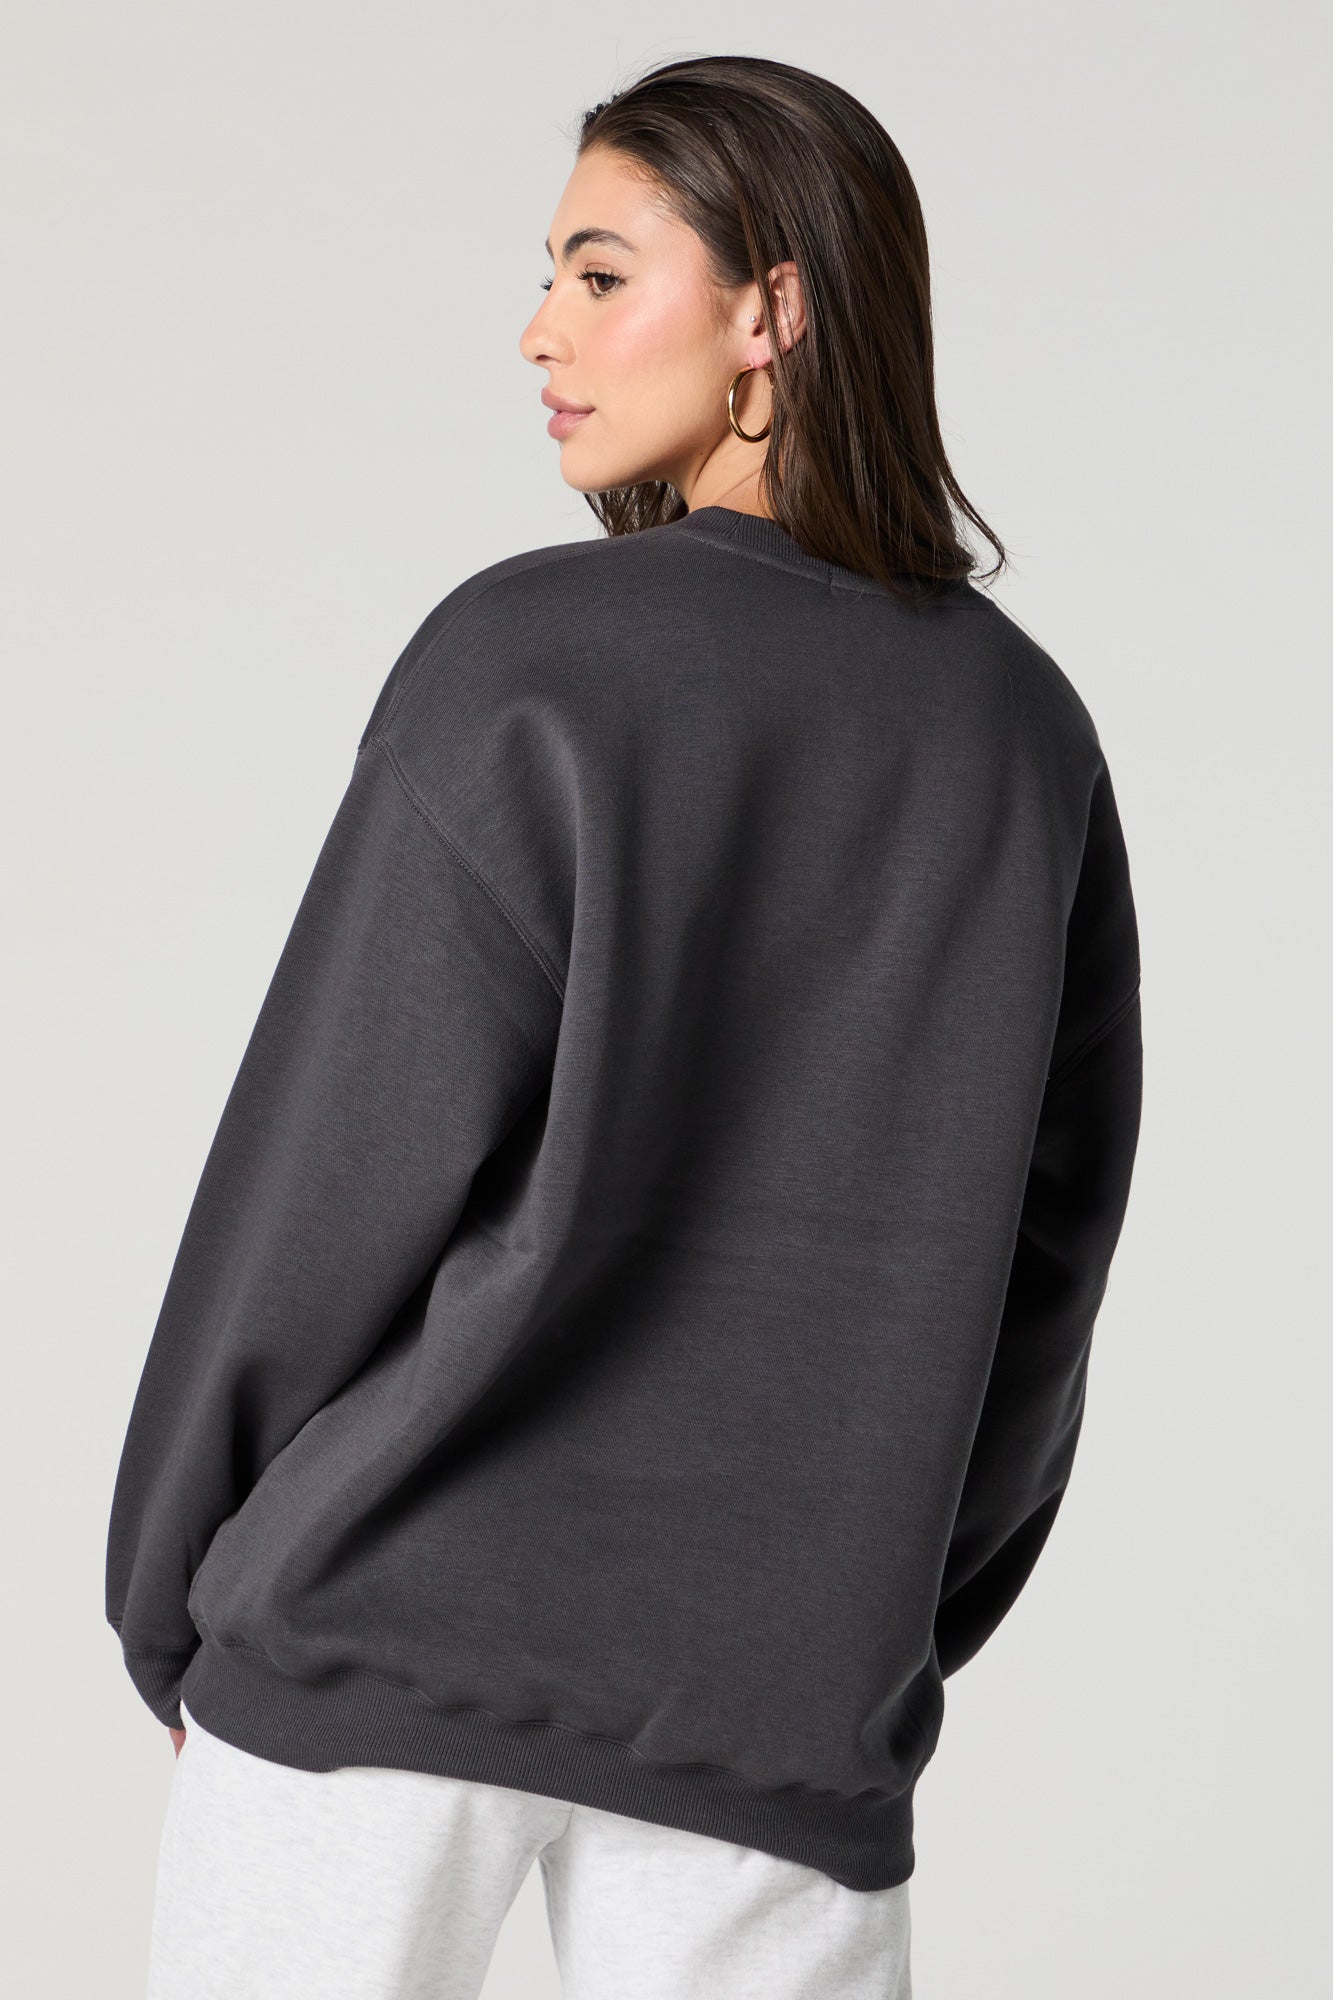 Embroidered Fleece Sweatshirt